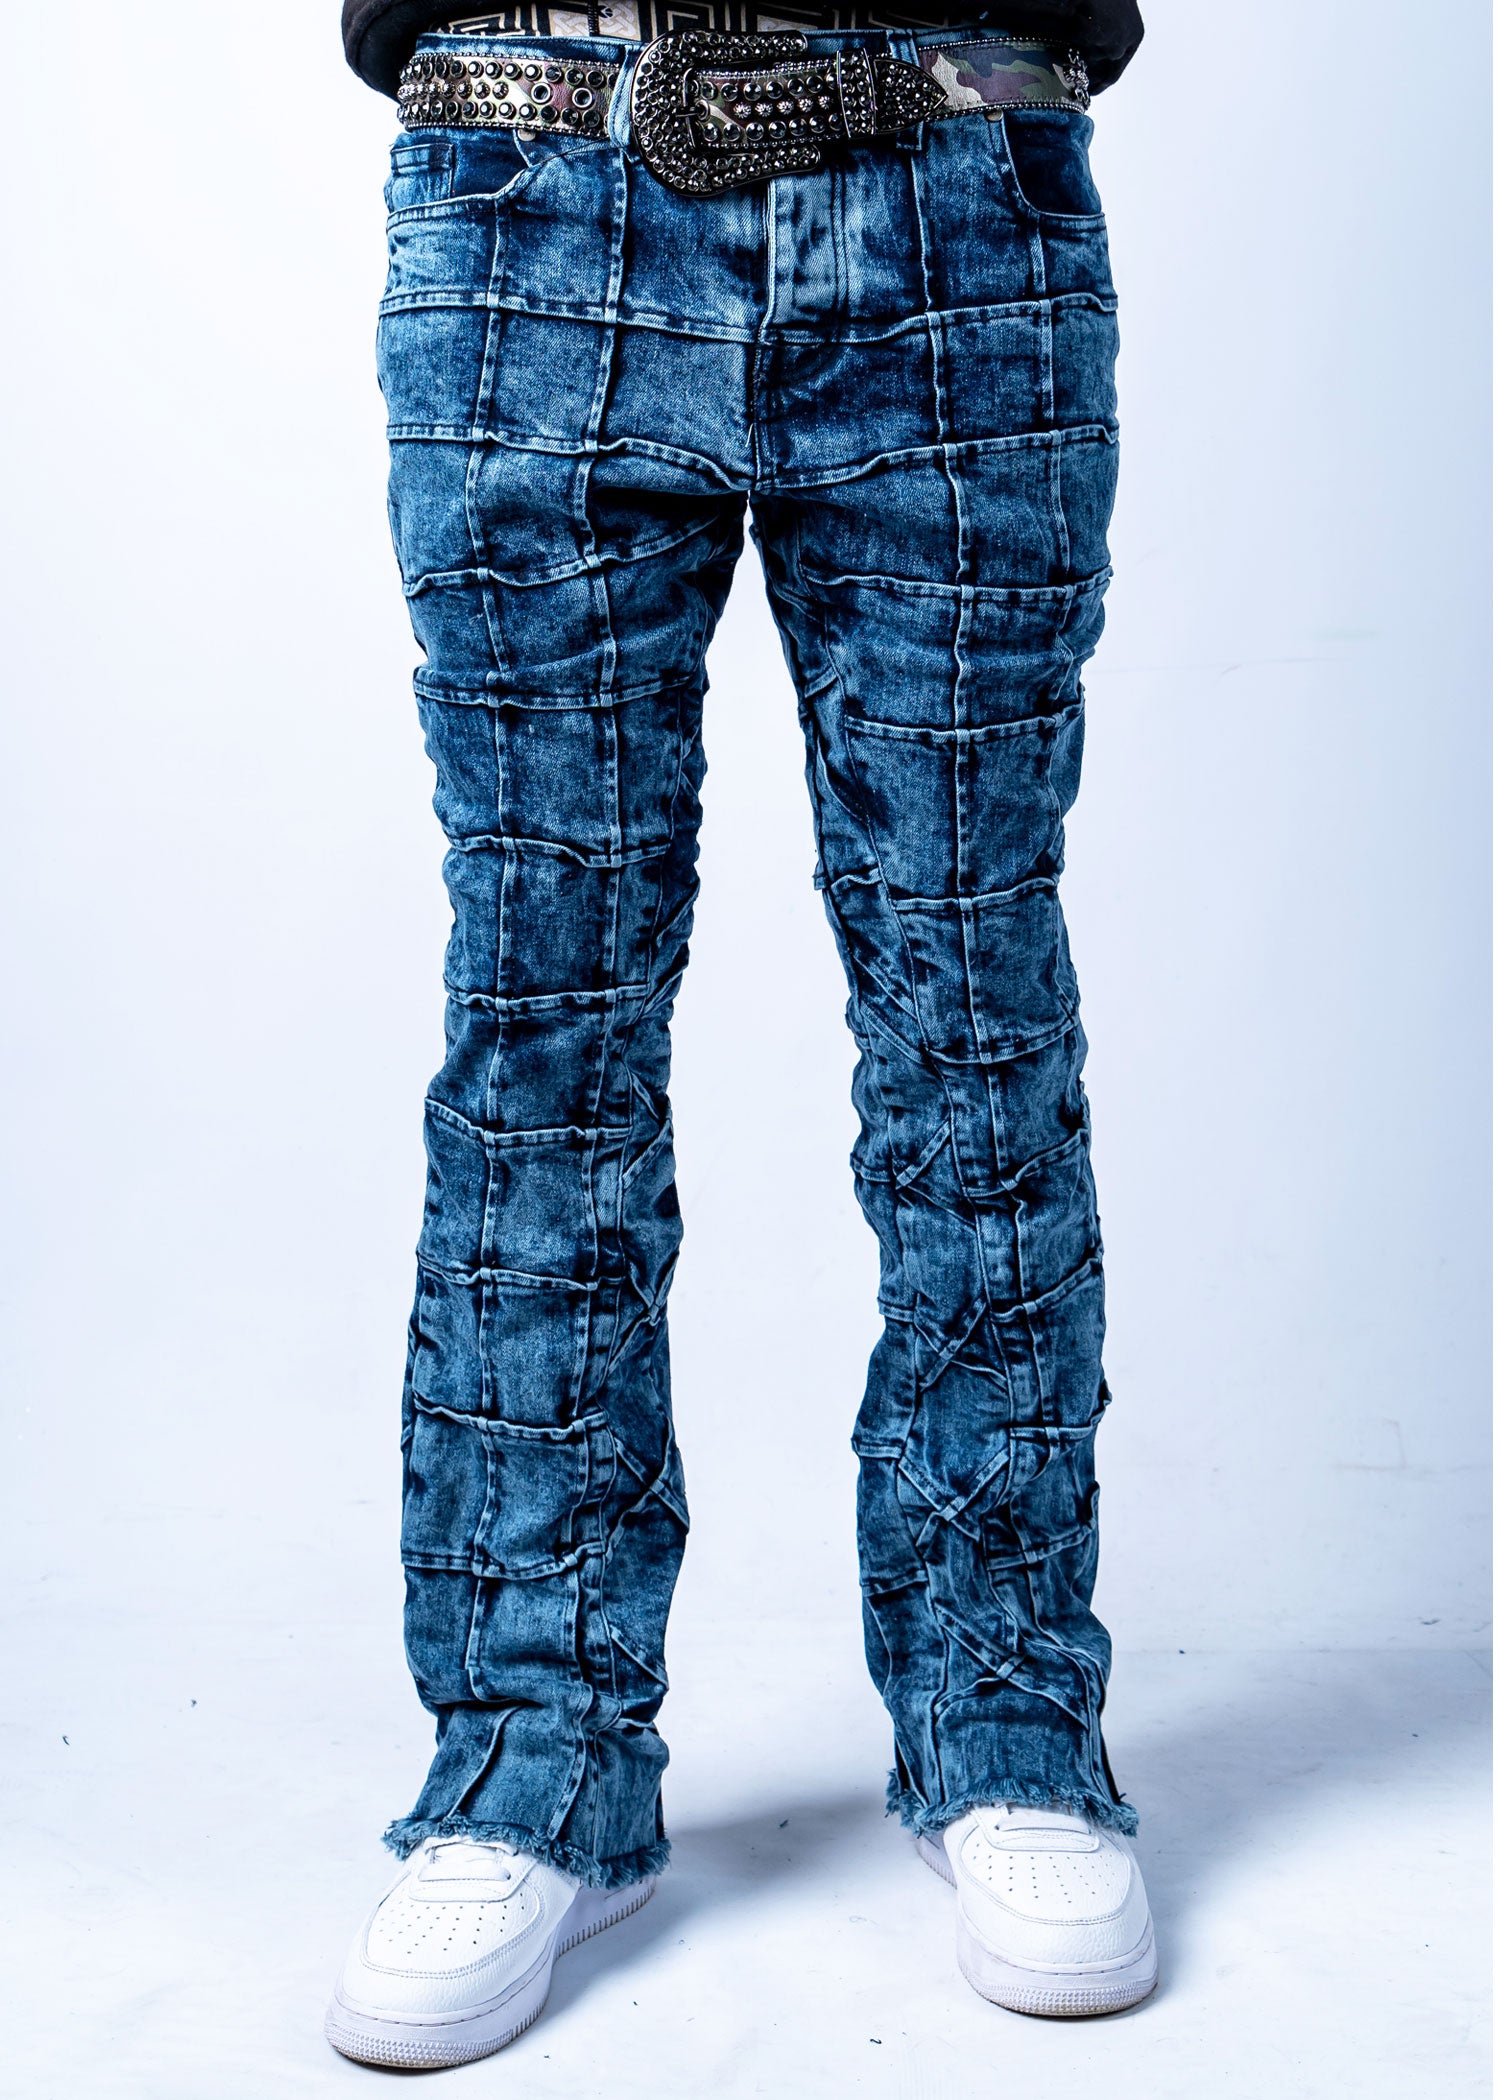 Reves Mens Stacked Denim Jeans Navy Blue - 95denim